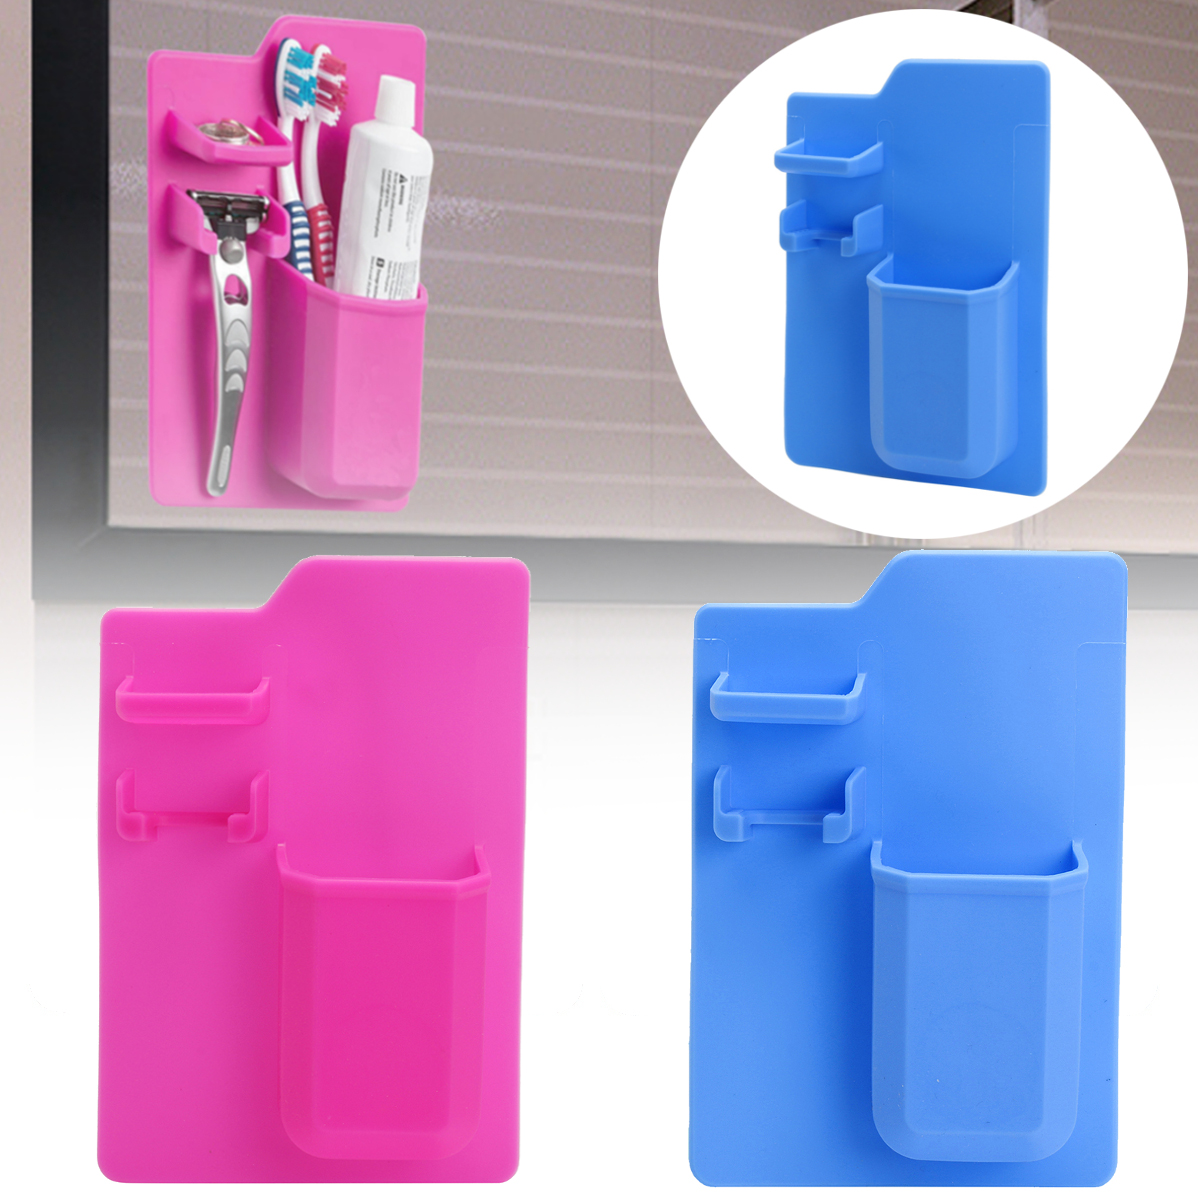 Bathroom-Kitchen-Silicone-Toothbrush-Holder-Toothpaste-Bracket-Mirror-Organizer-Storage-Space-Rack-1322584-9